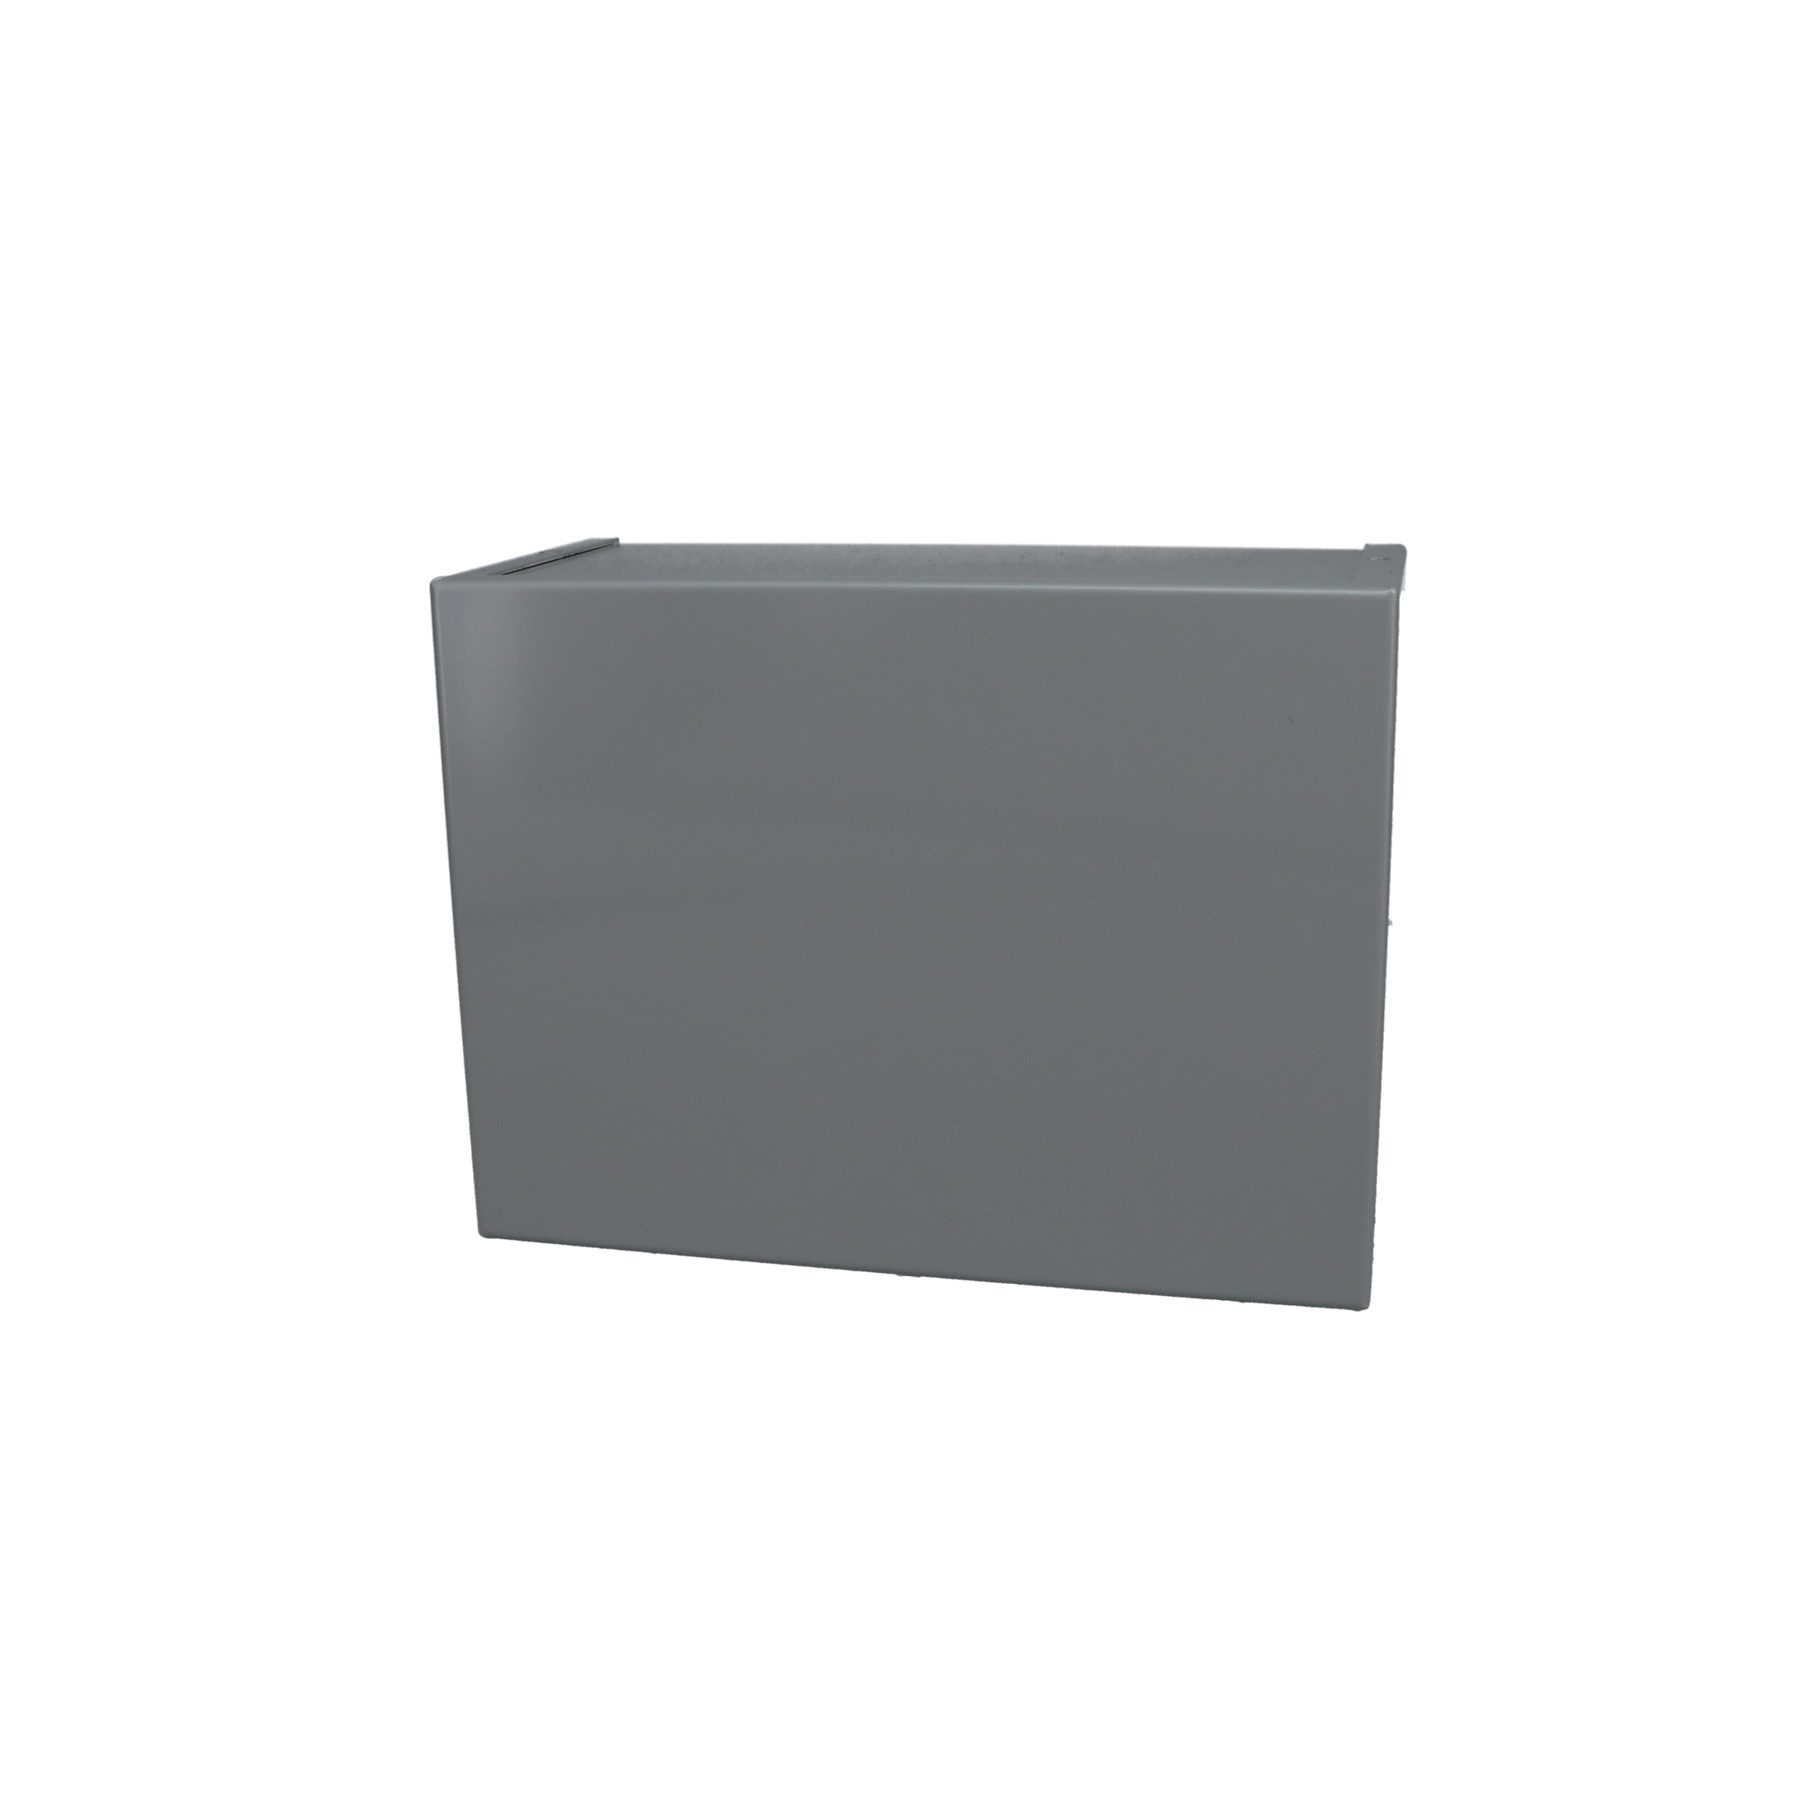 Minibox Small Metal Box Gray CU-2109-B